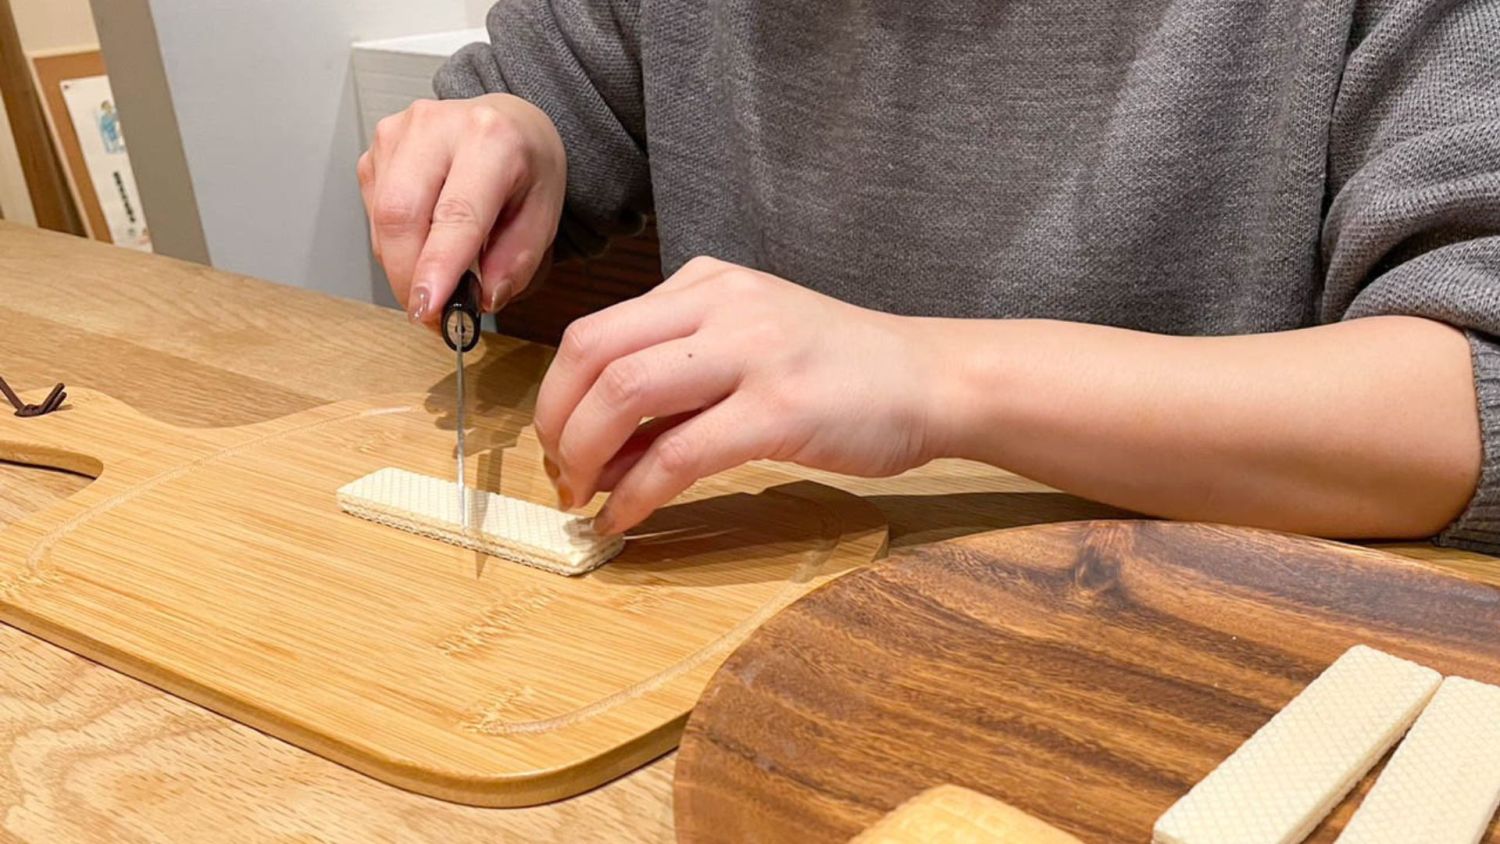 子供でも簡単にできる「手作りお菓子の家」の作り方